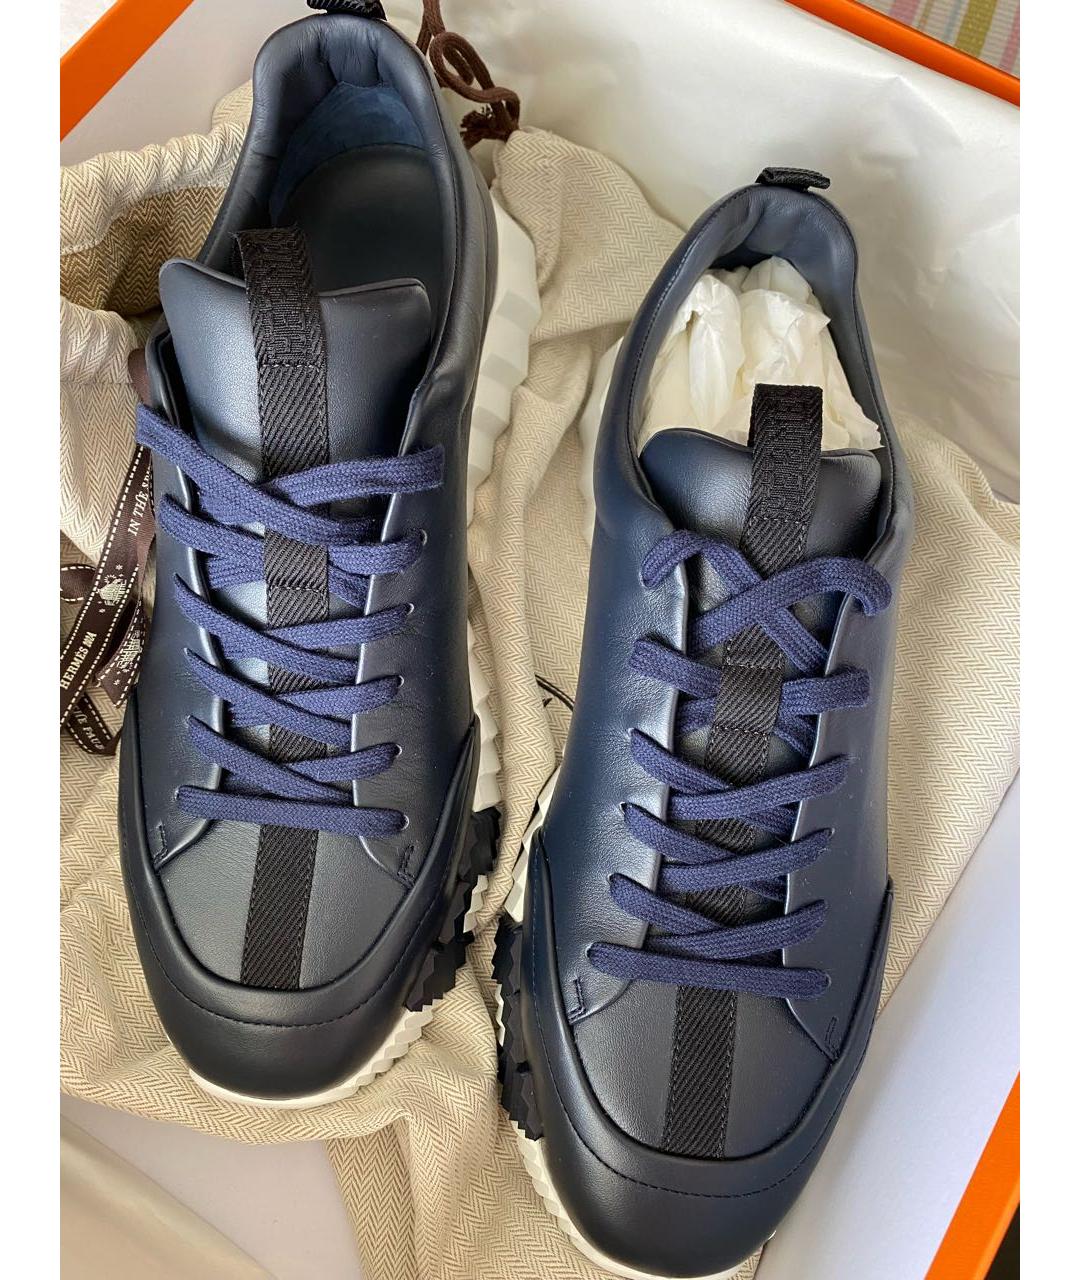 HERMES PRE-OWNED Темно-синие кожаные низкие кроссовки / кеды, фото 2